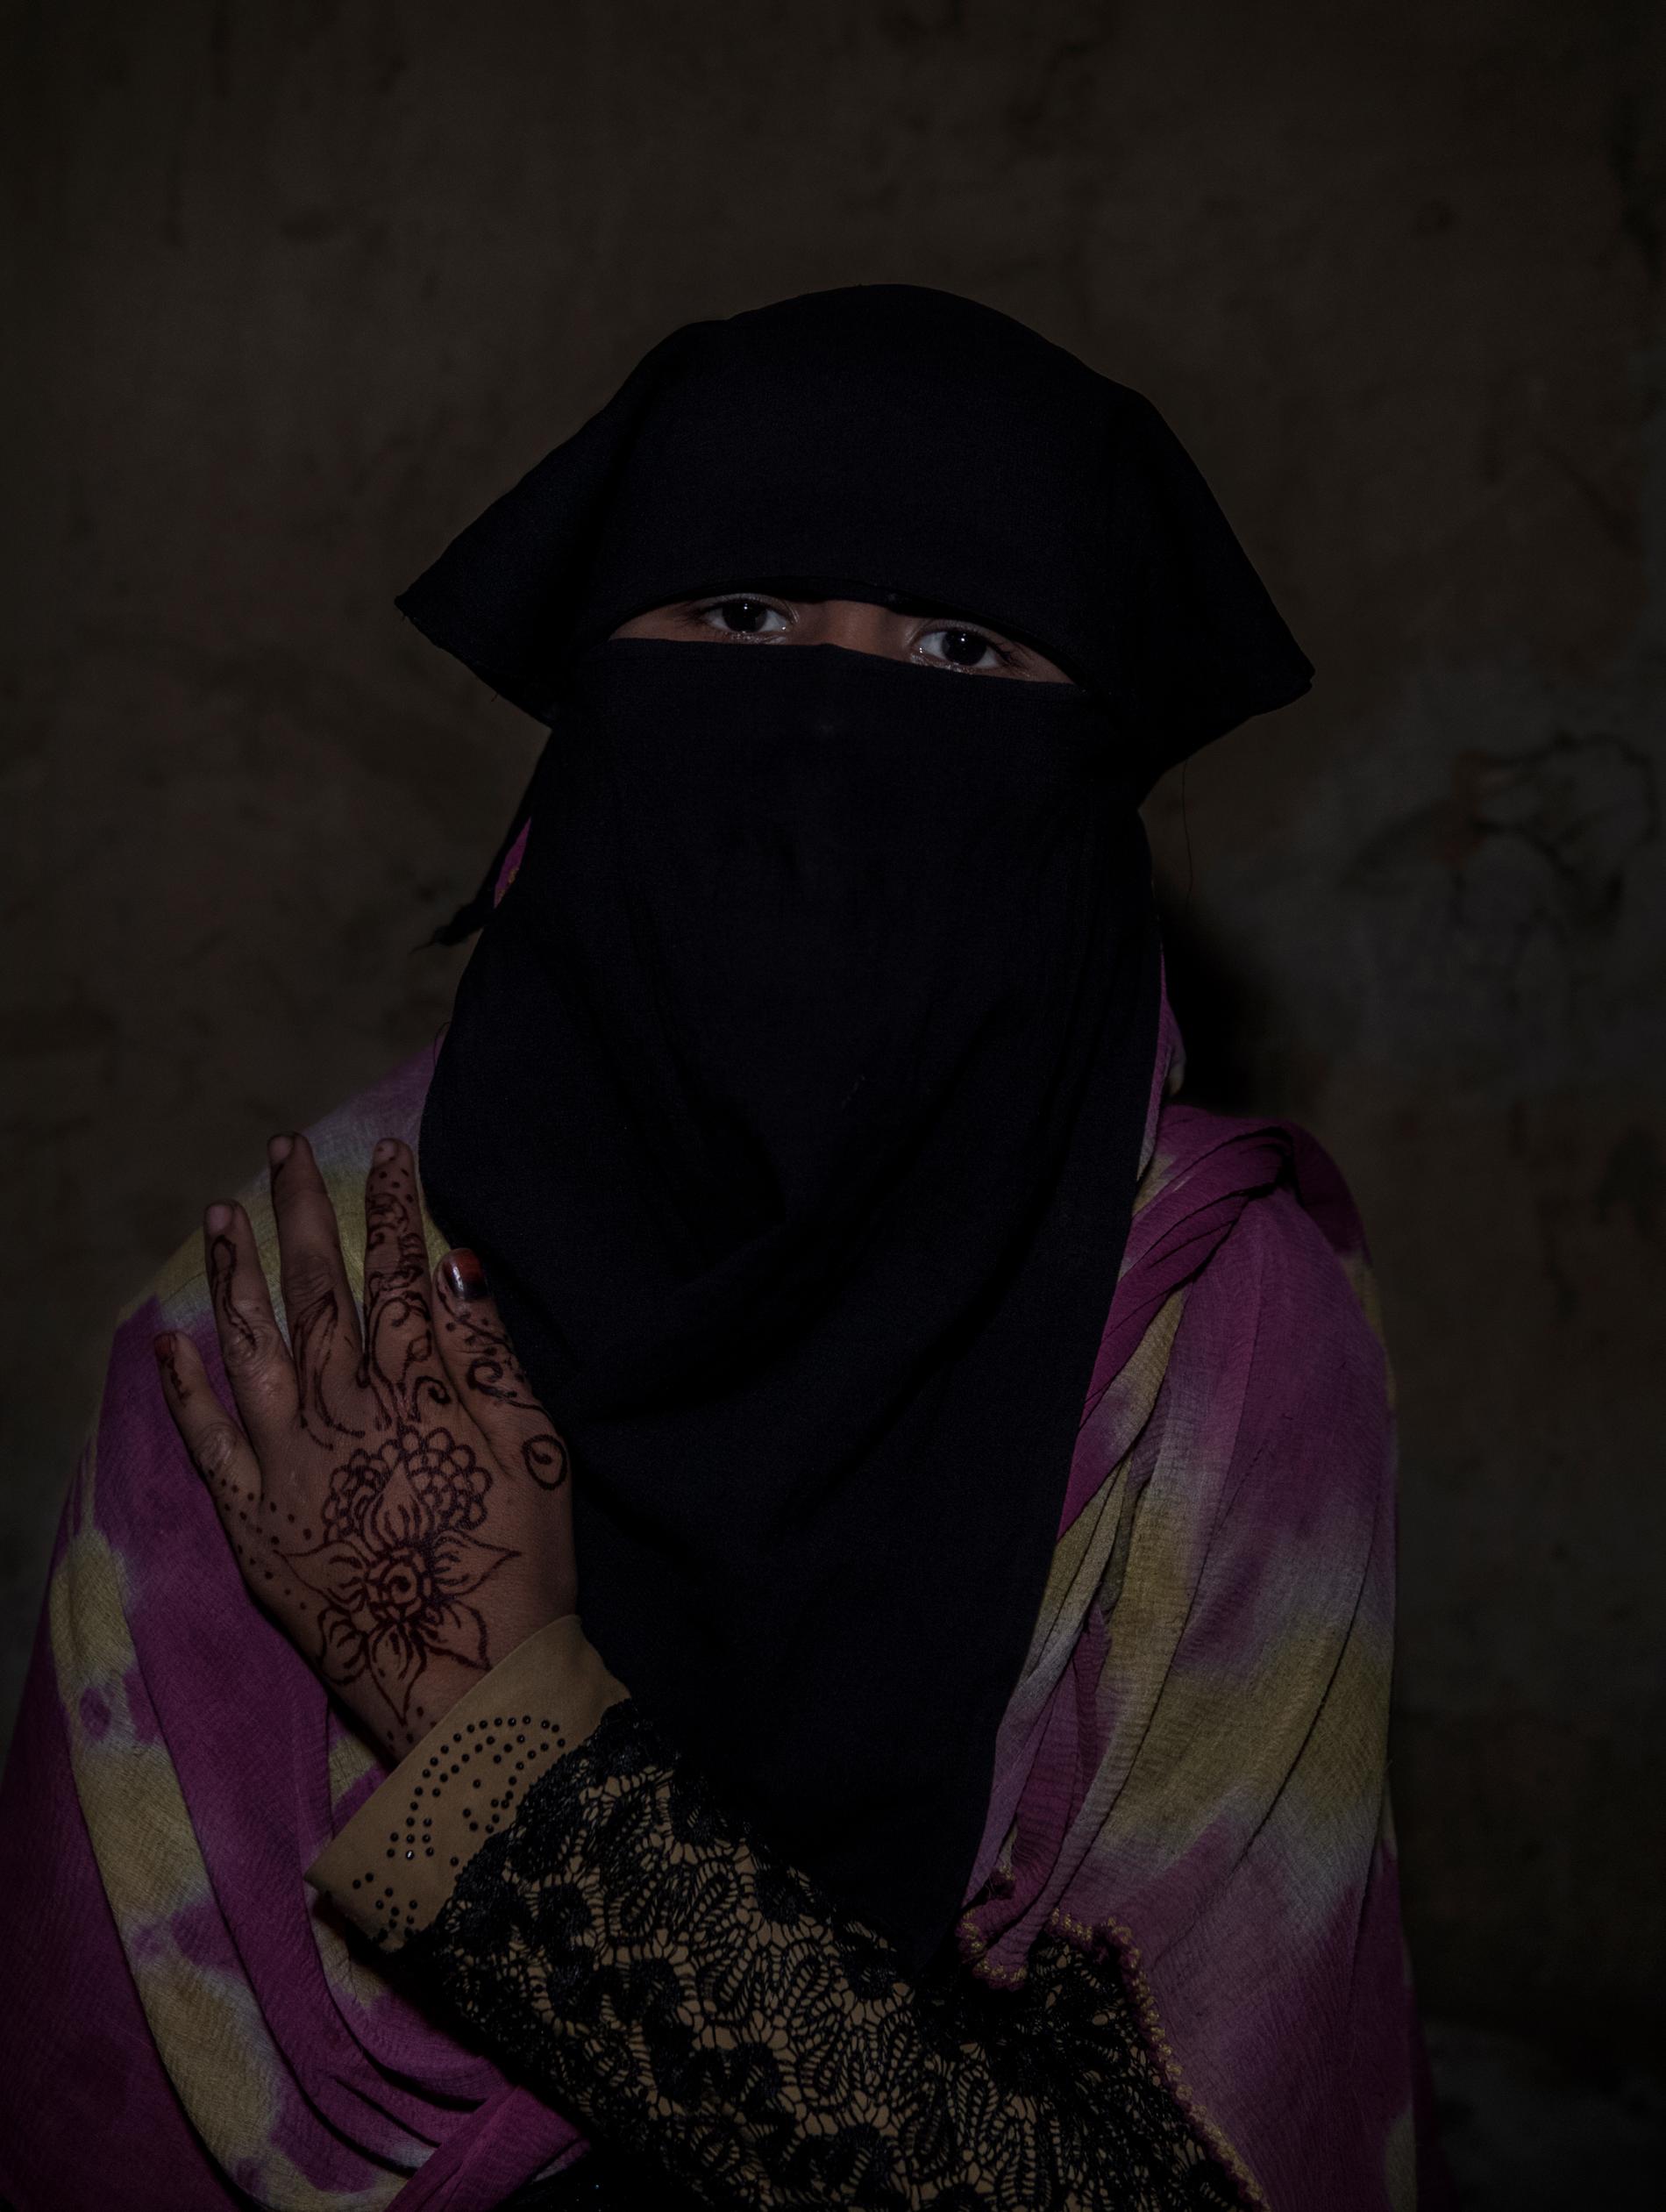 Khaleda, 15 år, våldtogs av sju militärer i Burma. Hon tvingades höra hur hennes familj dödades samtidigt som hon våldtogs. ”Förut ville jag dö, men nu är jag glad att jag lever”, säger hon.